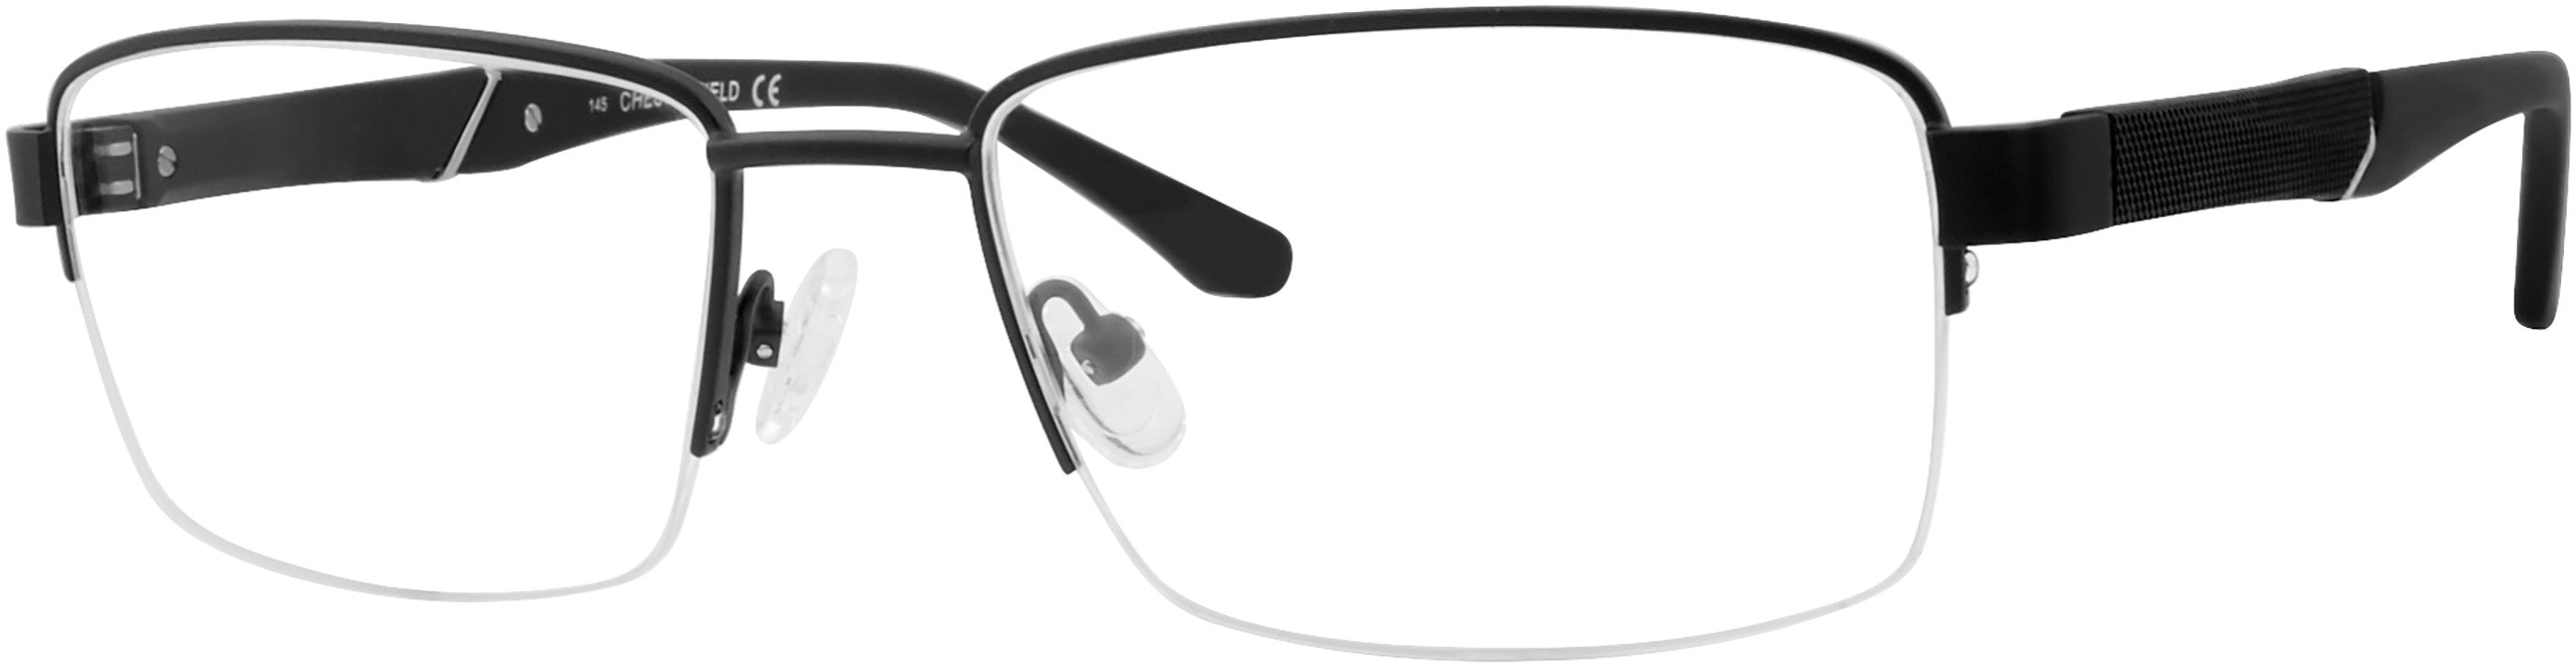  Chesterfield 68XL Rectangular Eyeglasses 0003-0003  Matte Black (00 Demo Lens)